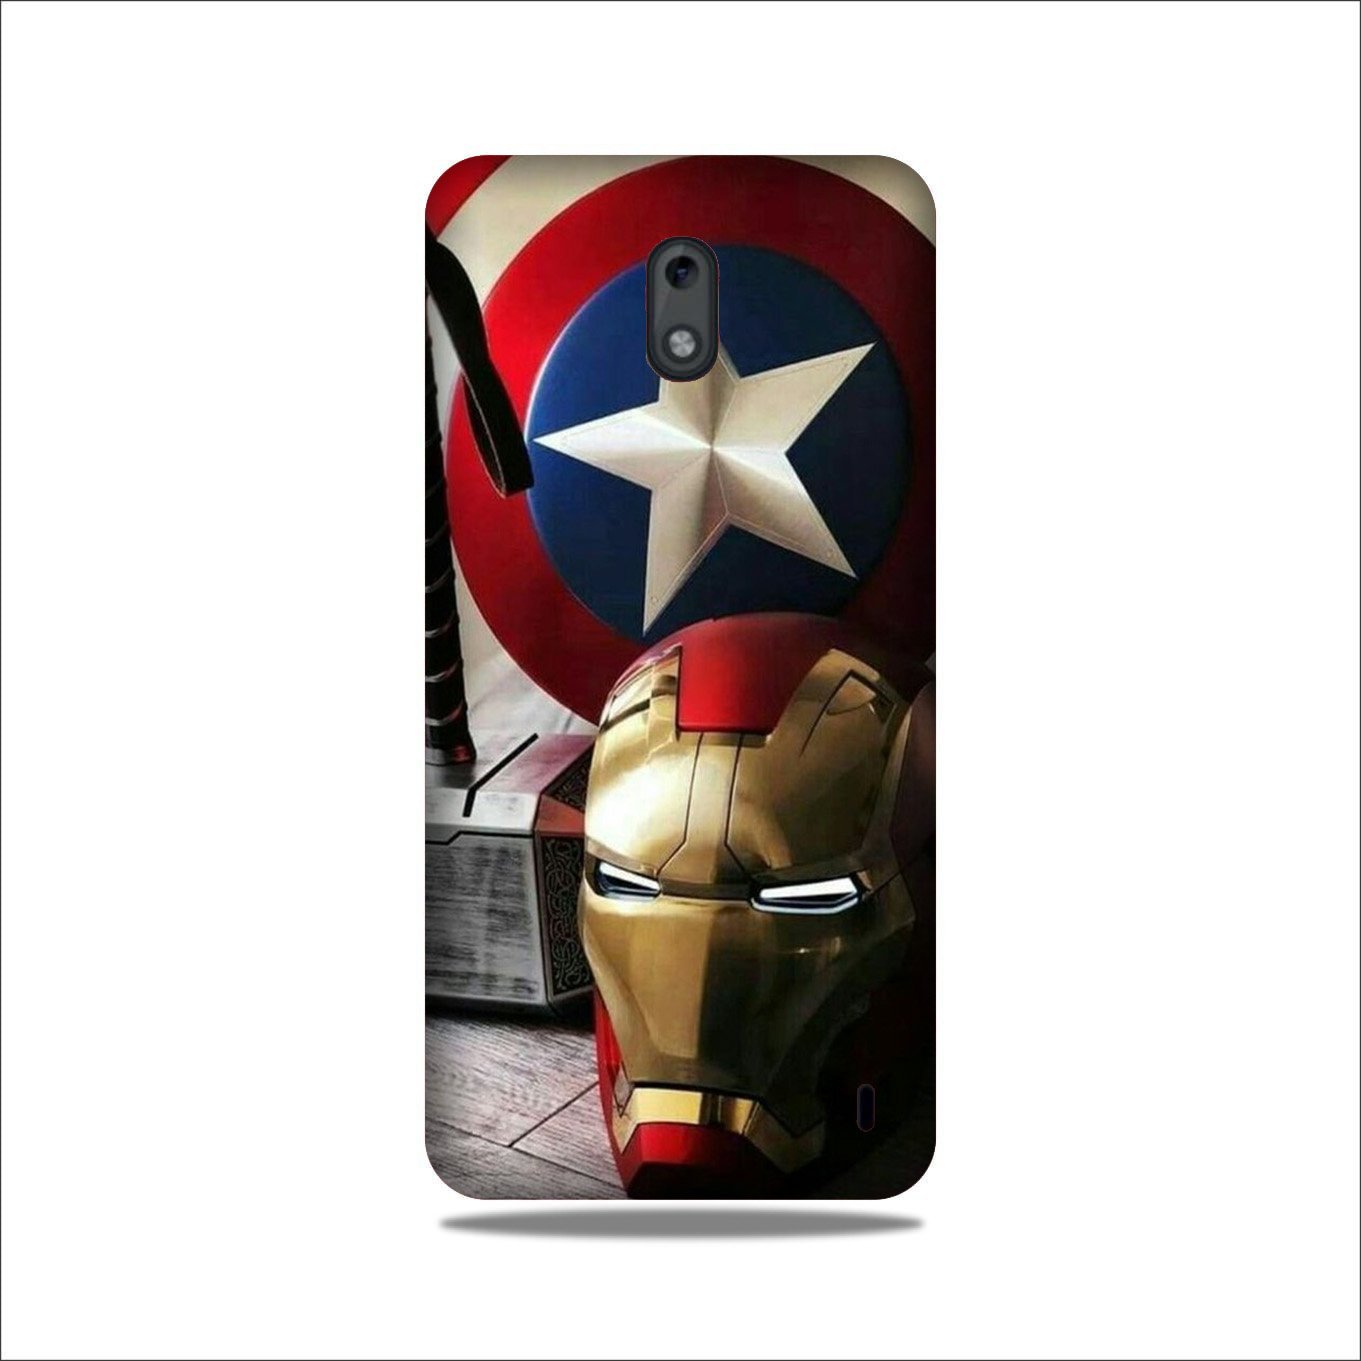 Ironman Captain America Case for Nokia 2.2 (Design No. 254)